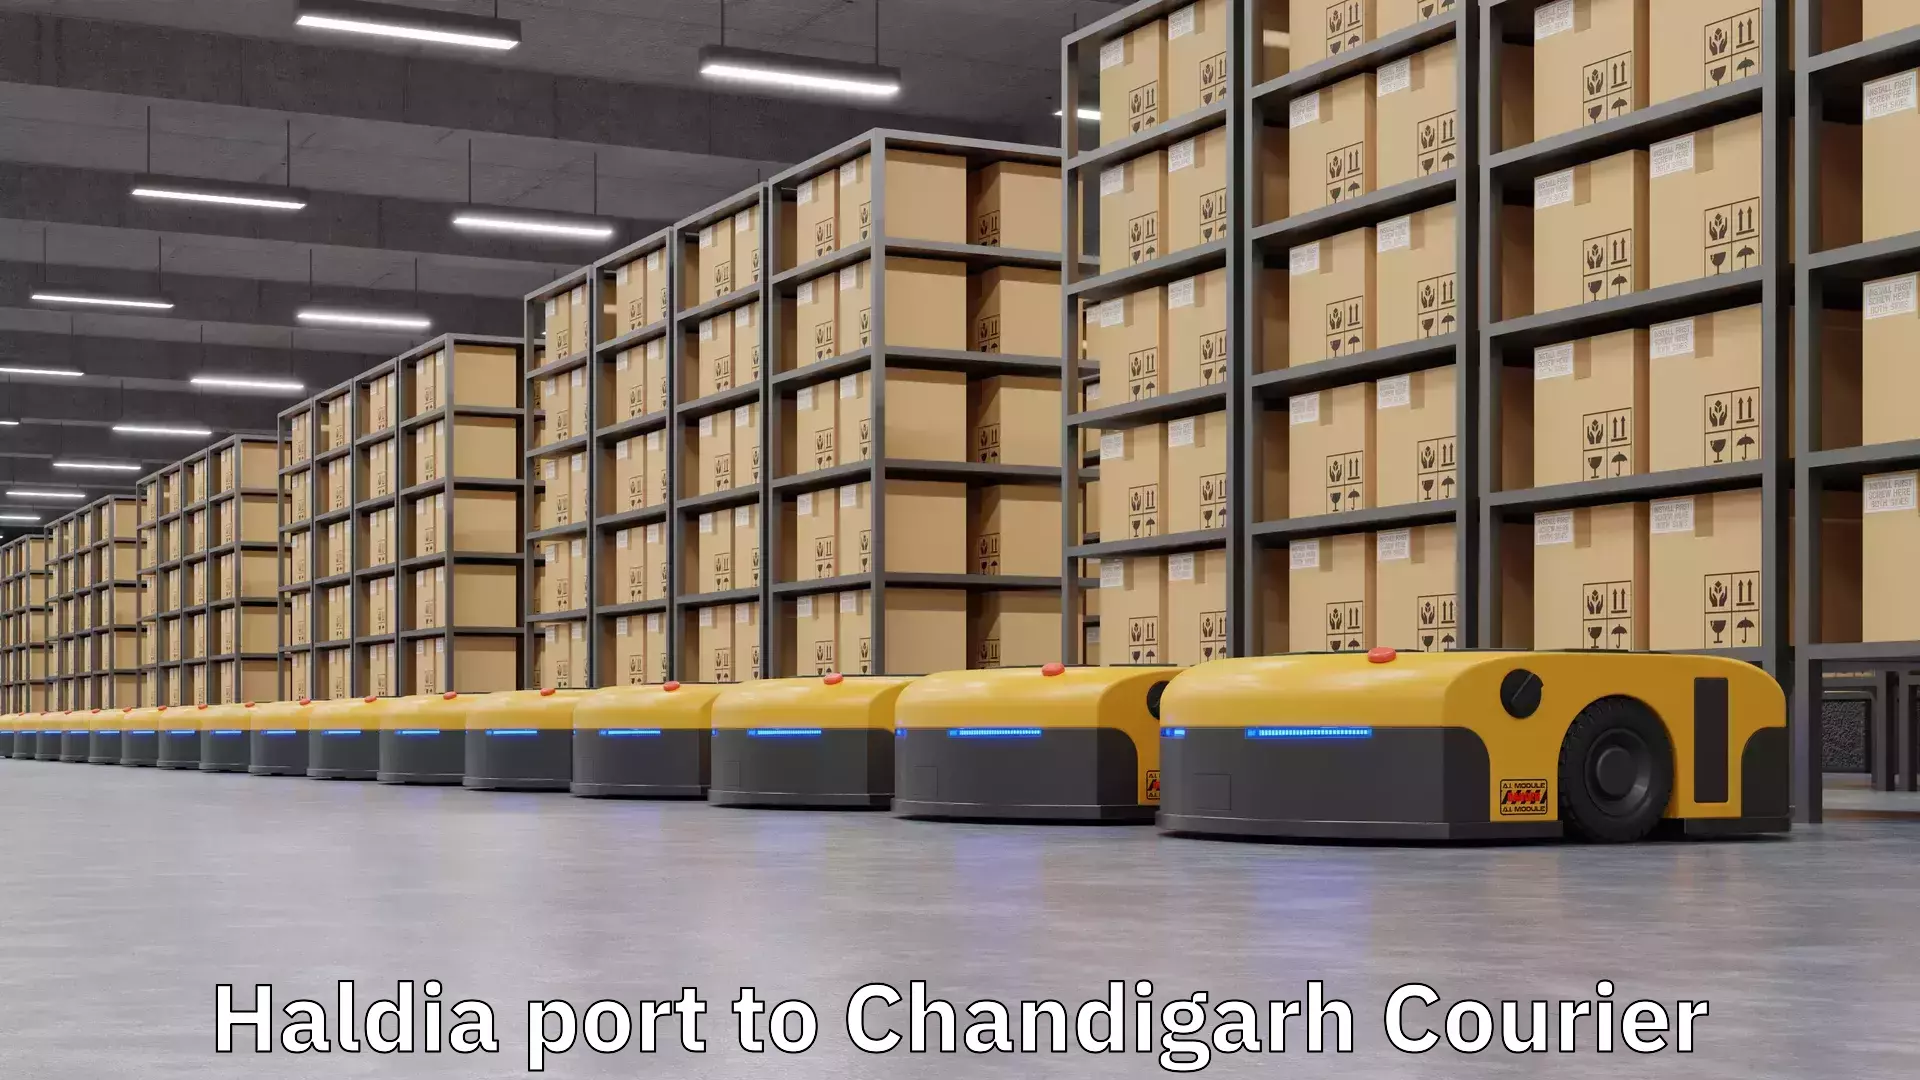 User-friendly courier app Haldia port to Chandigarh